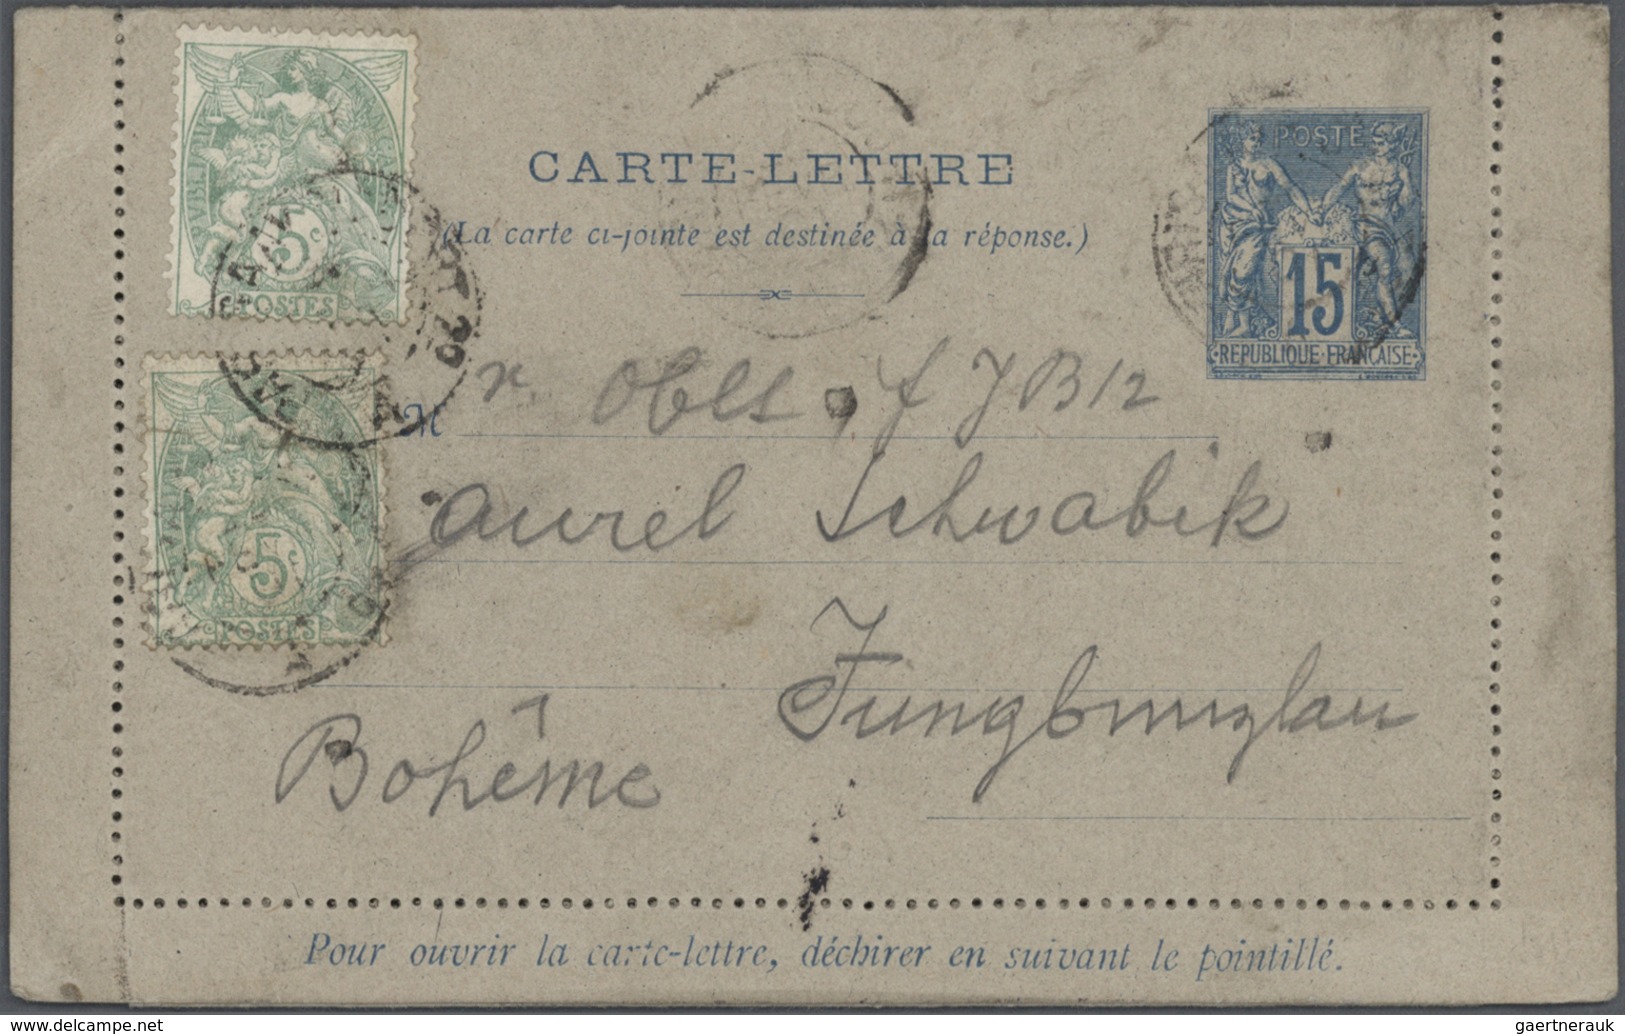 26520 Frankreich - Ganzsachen: 1875/1910 (ca.), Sammlung von etwa 140 alten Ganzsachen bzw. Postkarten-Vor